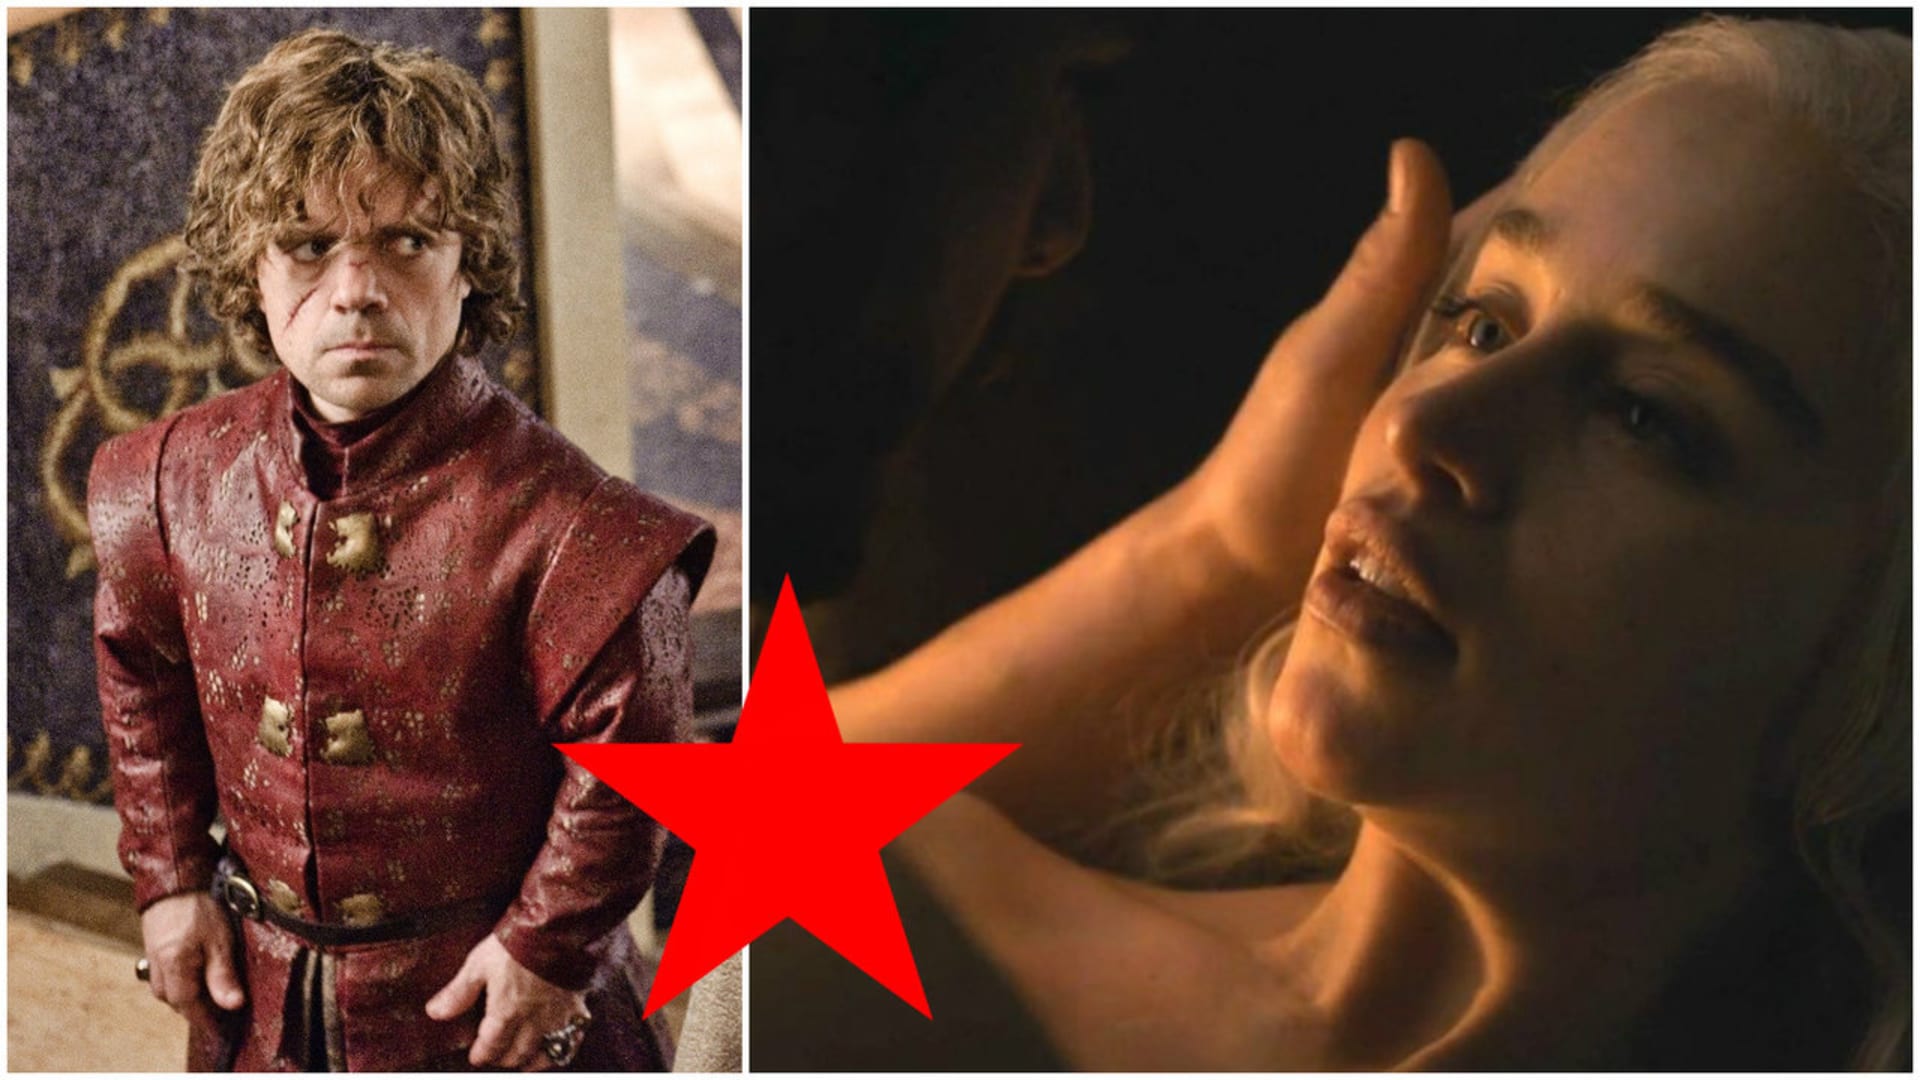 Co stojí za Tyrionovým temným výrazem?